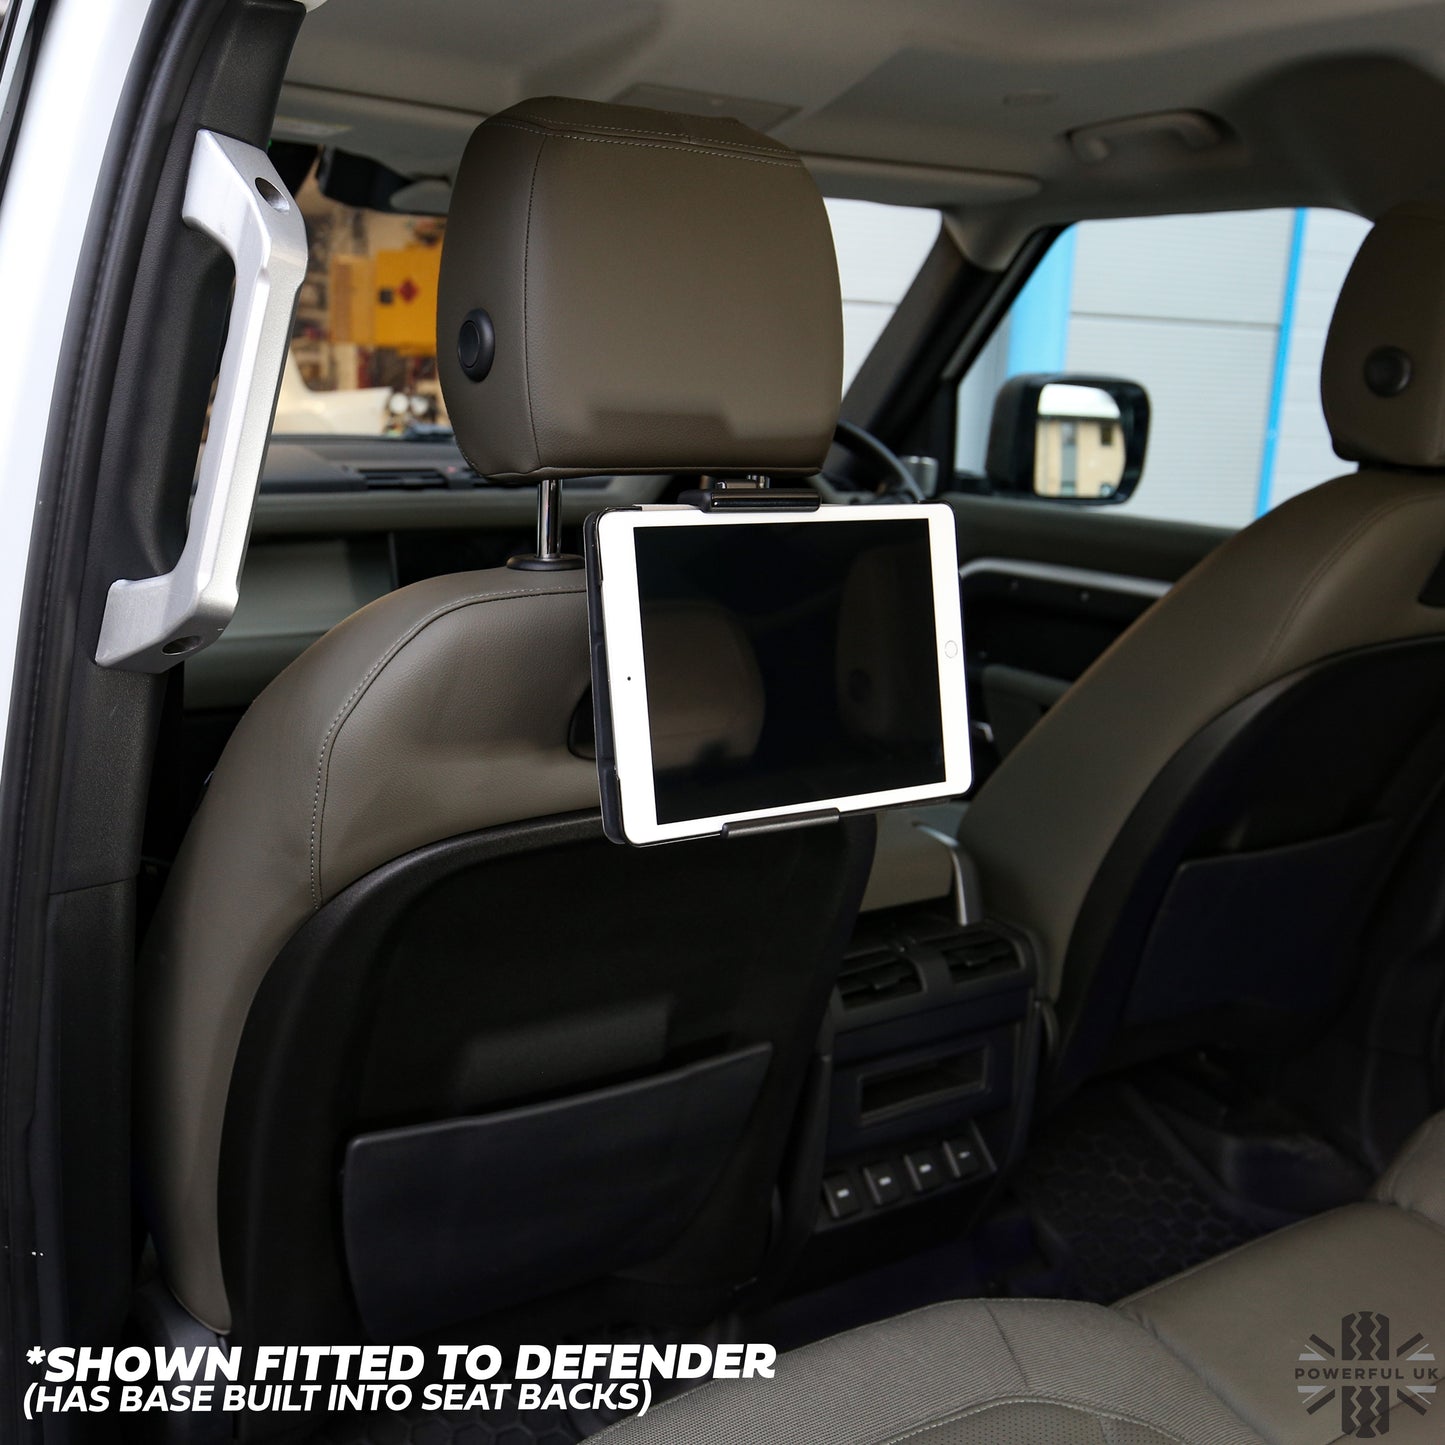 Click+Go Universal Tablet Holder for Range Rover Velar